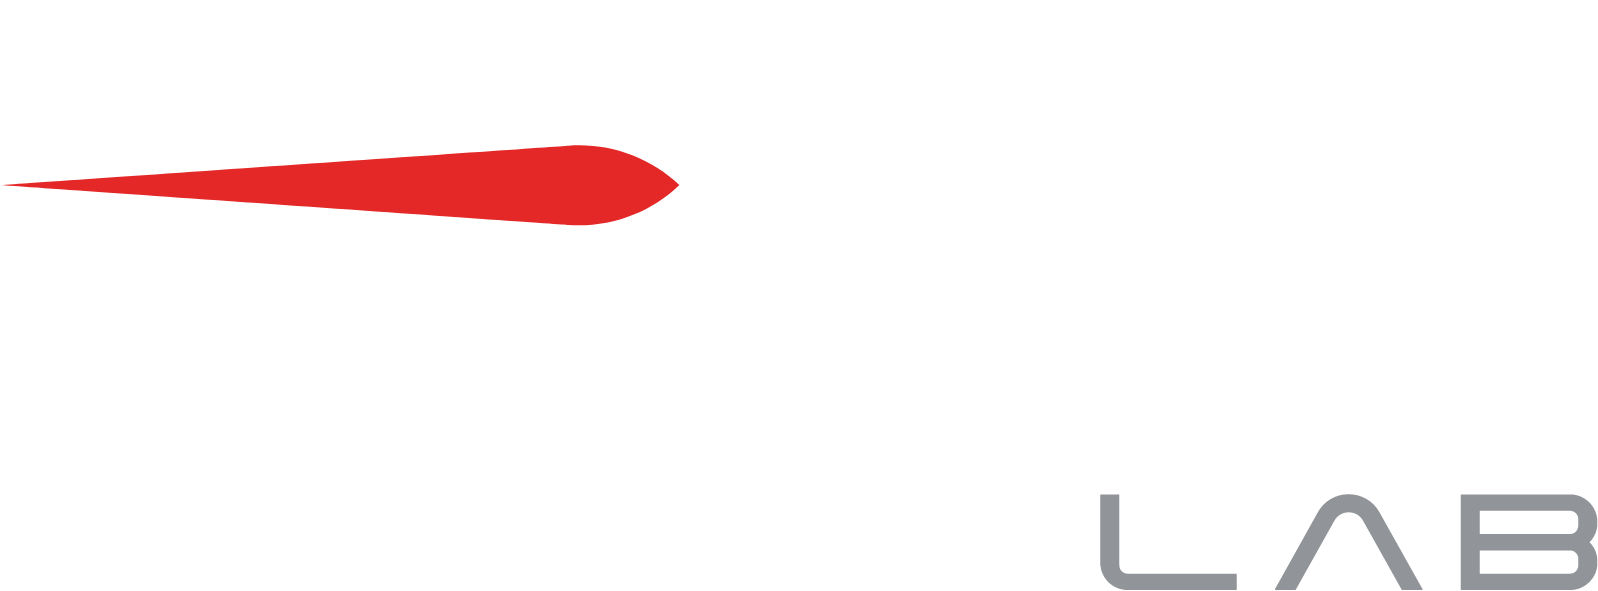 Rocket Lab logo large for dark backgrounds (transparent PNG)